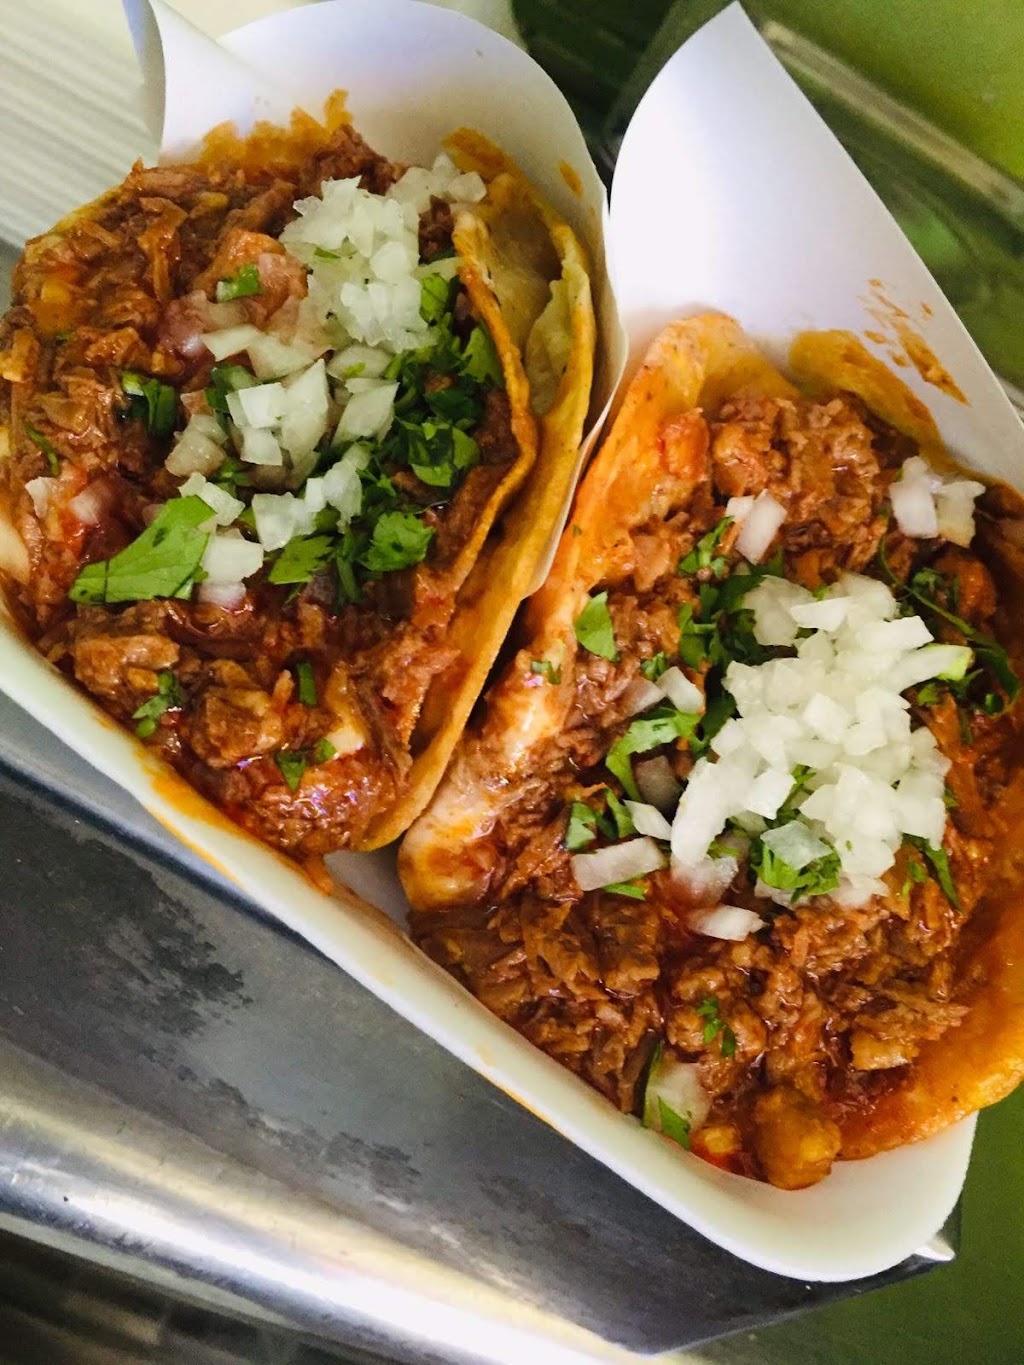 El Remolque Tacos Varios | Blvd. el Rosario 11997, Porticos De San Antonio, 22666 Tijuana, B.C., Mexico | Phone: 664 112 3717